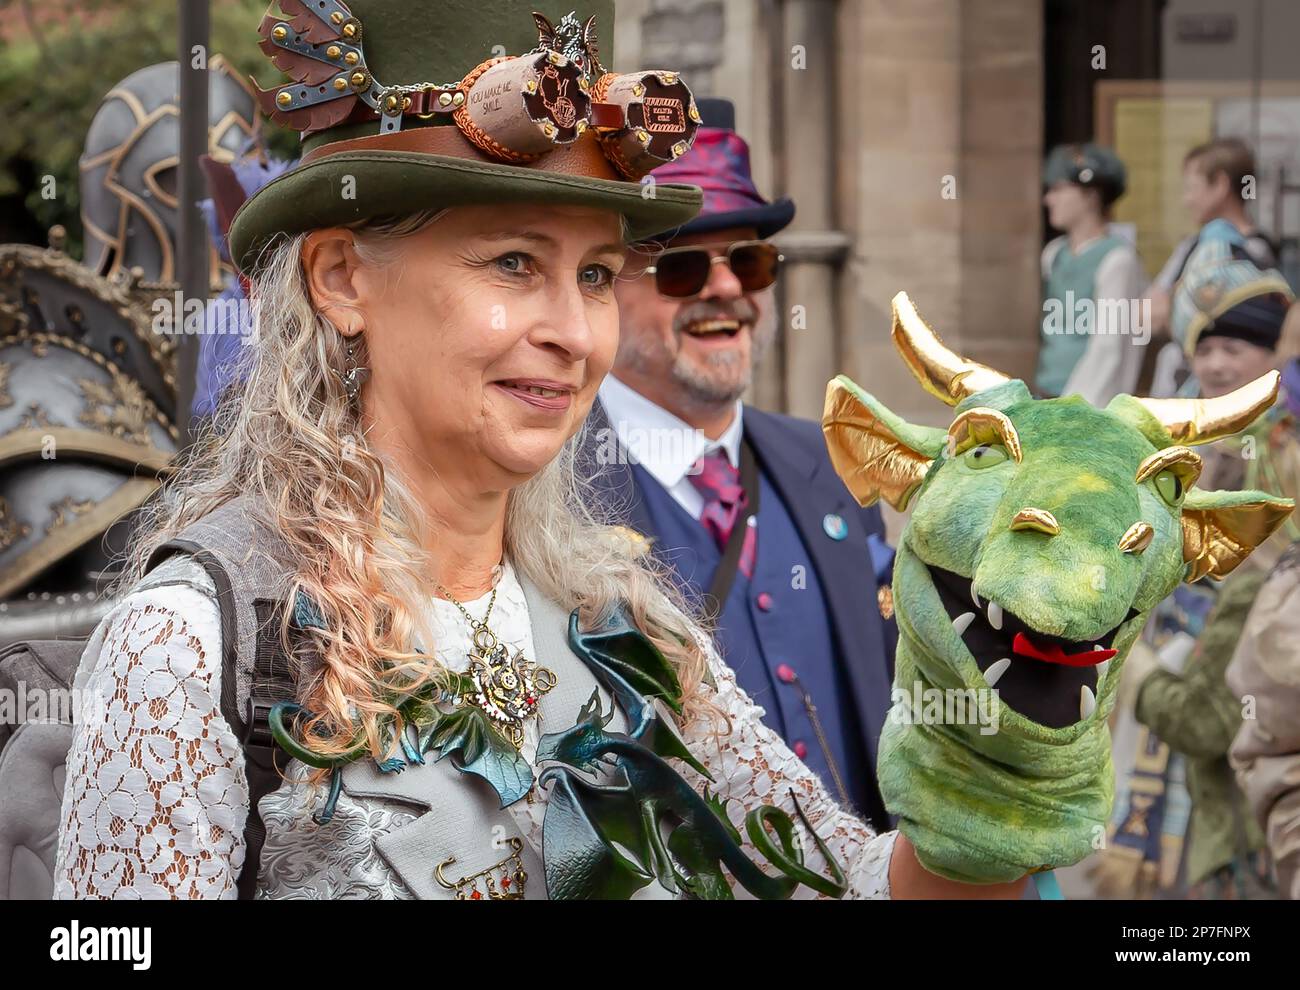 Une femelle steampunk tenant une marionnette à tête de dragon. Banque D'Images